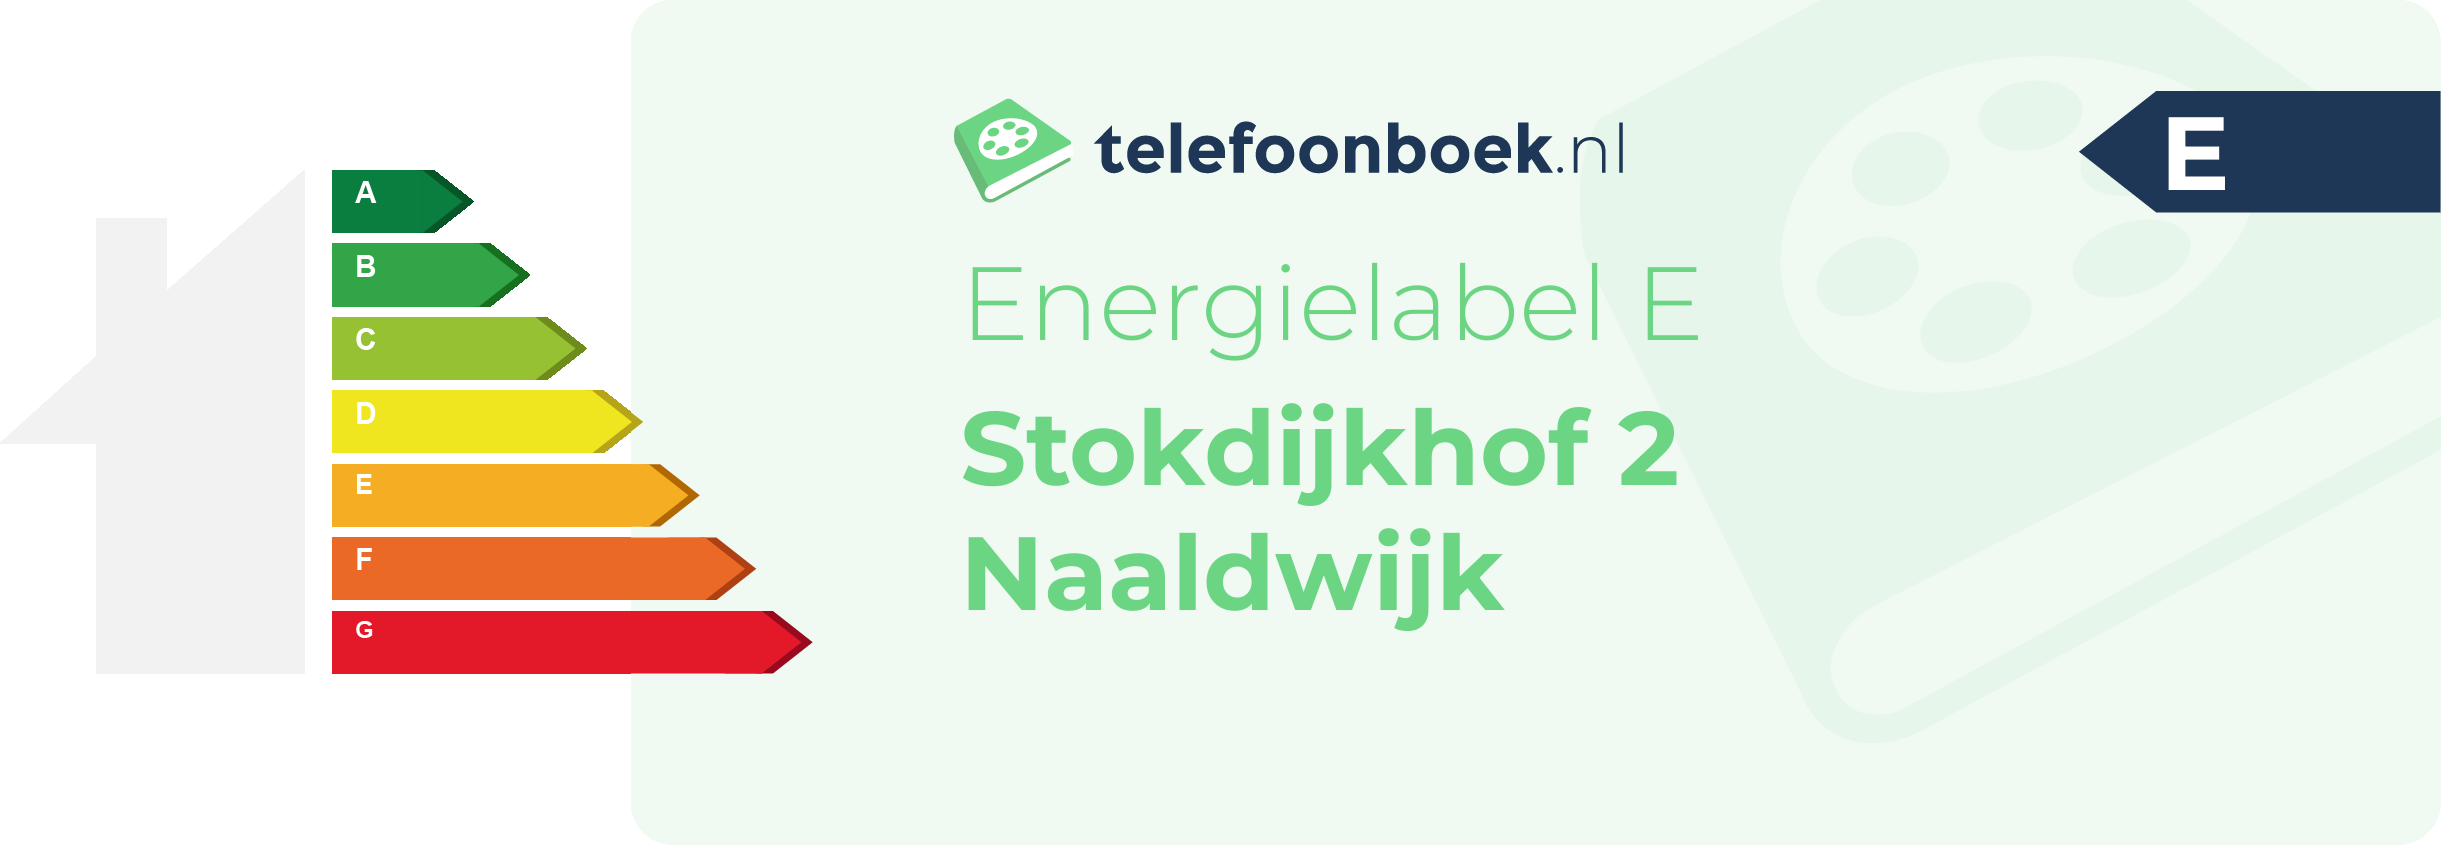 Energielabel Stokdijkhof 2 Naaldwijk